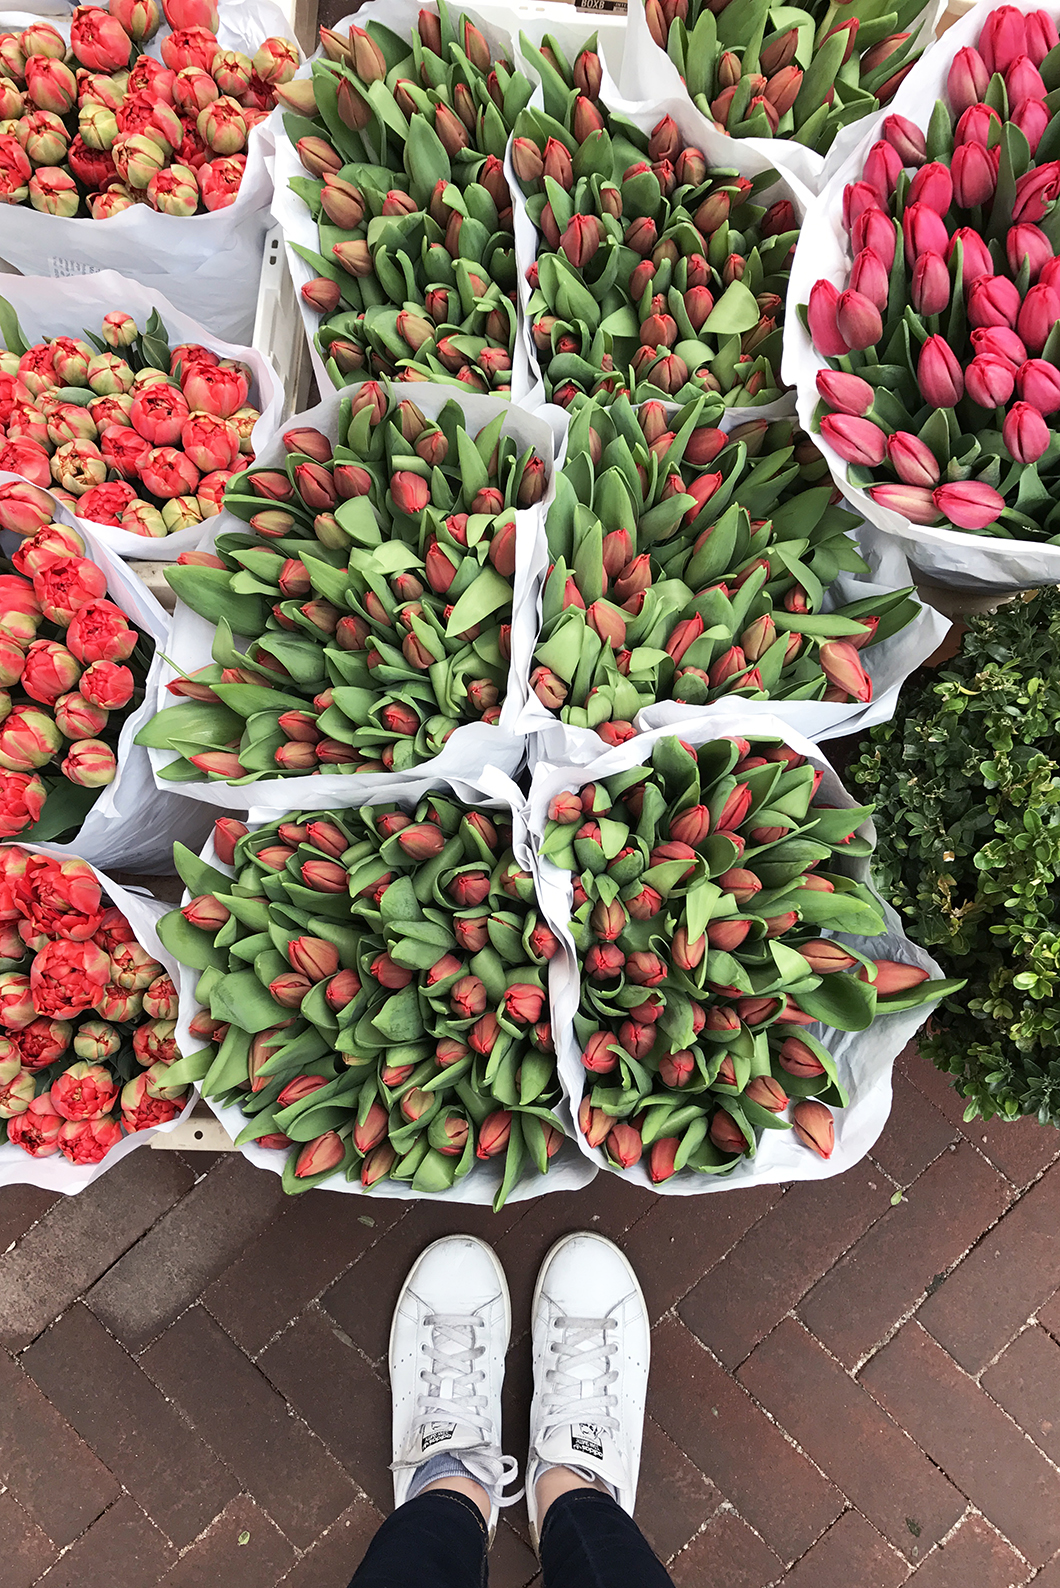 Le marché aux fleurs de Amsterdam